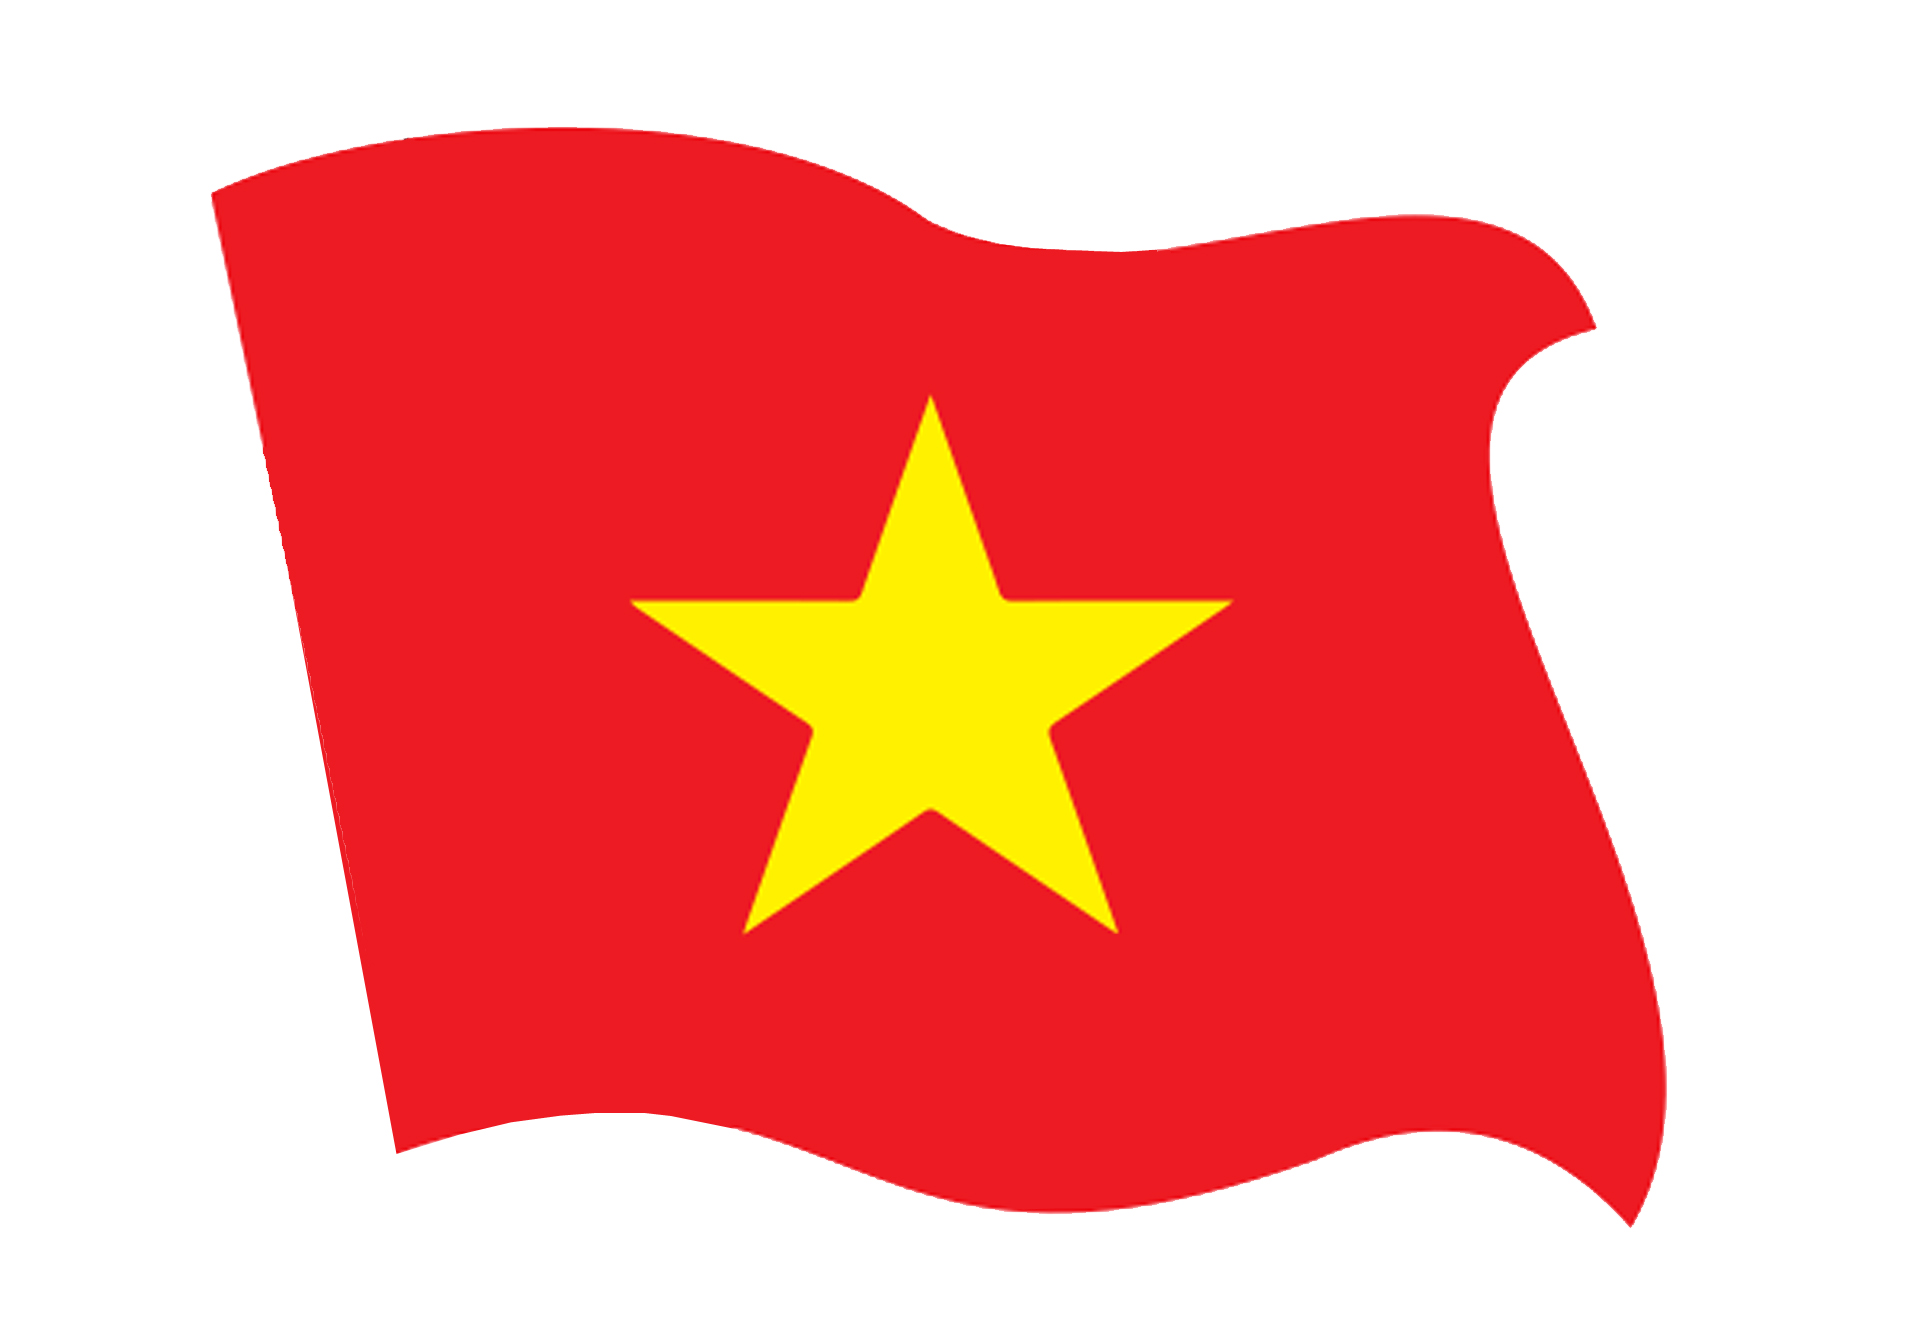 Logo Cờ Việt Nam Png: Logo Cờ Việt Nam Png là mẫu thiết kế phổ biến cho việc sử dụng trên các tài liệu in ấn hay trang web của các doanh nghiệp. Với tính linh hoạt và độc đáo trong cách phối màu và định dạng, logo Cờ Việt Nam Png ngày càng được ưa chuộng. Hãy khám phá hình ảnh về logo Cờ Việt Nam Png để tìm cảm hứng cho việc thiết kế của bạn.